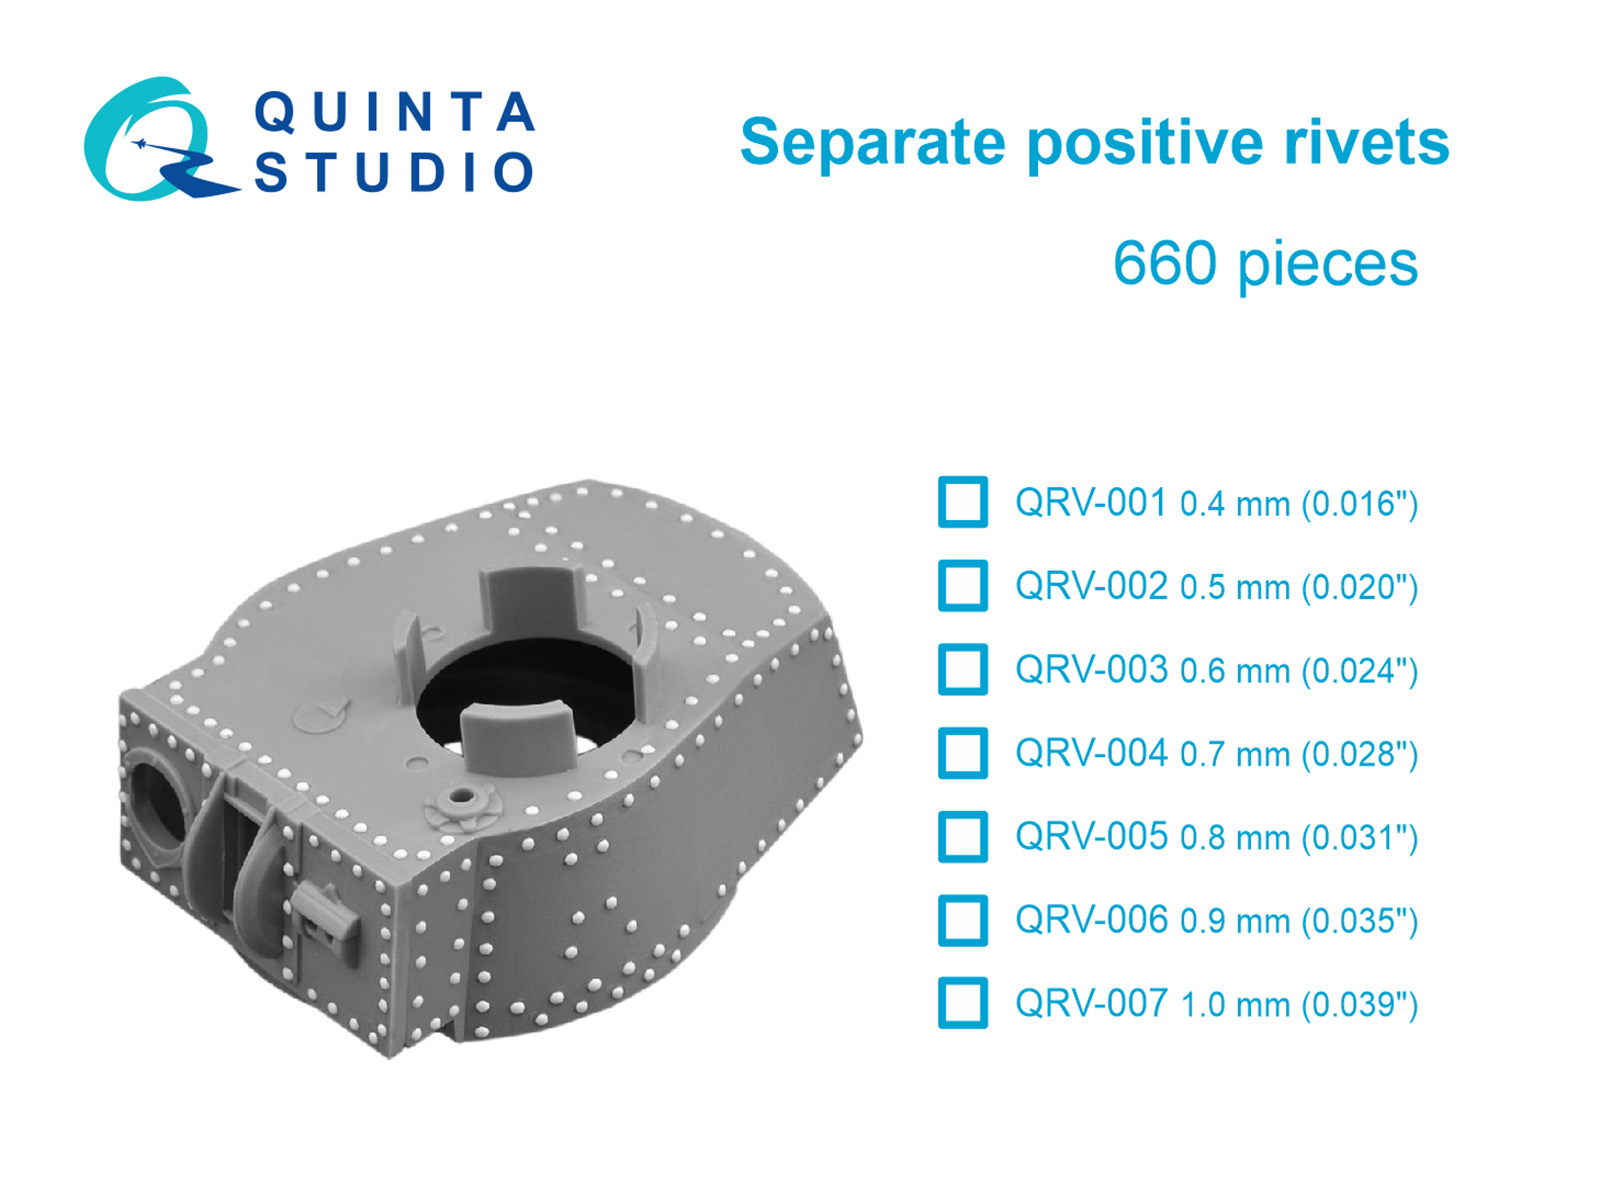 Separate positive rivets, 0.7mm (0.028"), 660 pcs